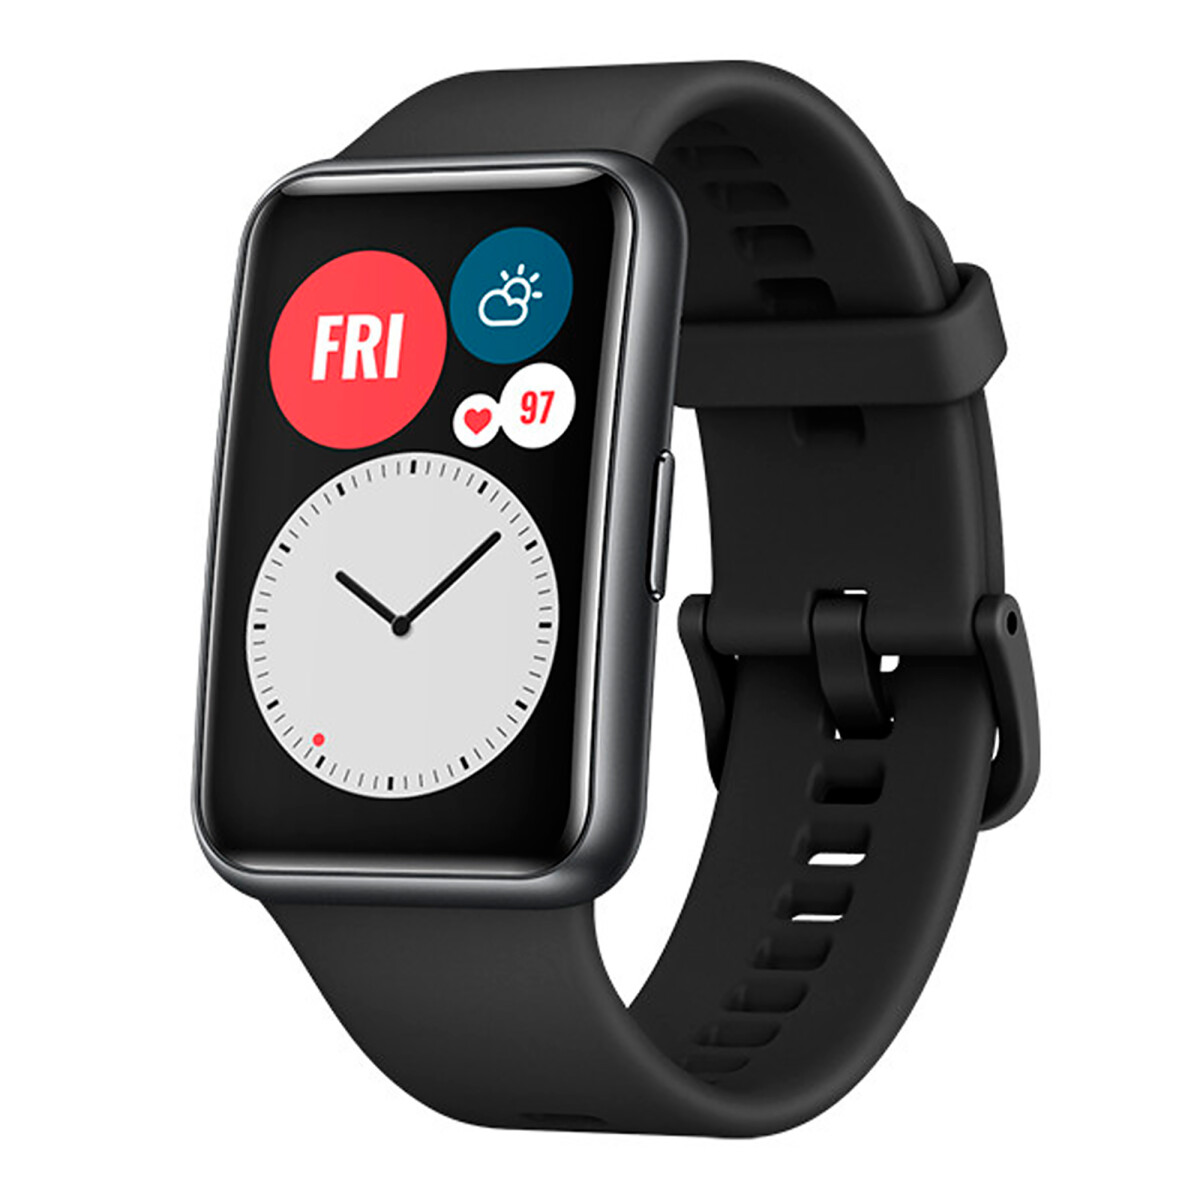 Huawei - Smartwatch Watch Fit - 11 Modos Deportivos. Frecuencia Cardíaca, Salud Femenina, Sueño. 5 a - 001 